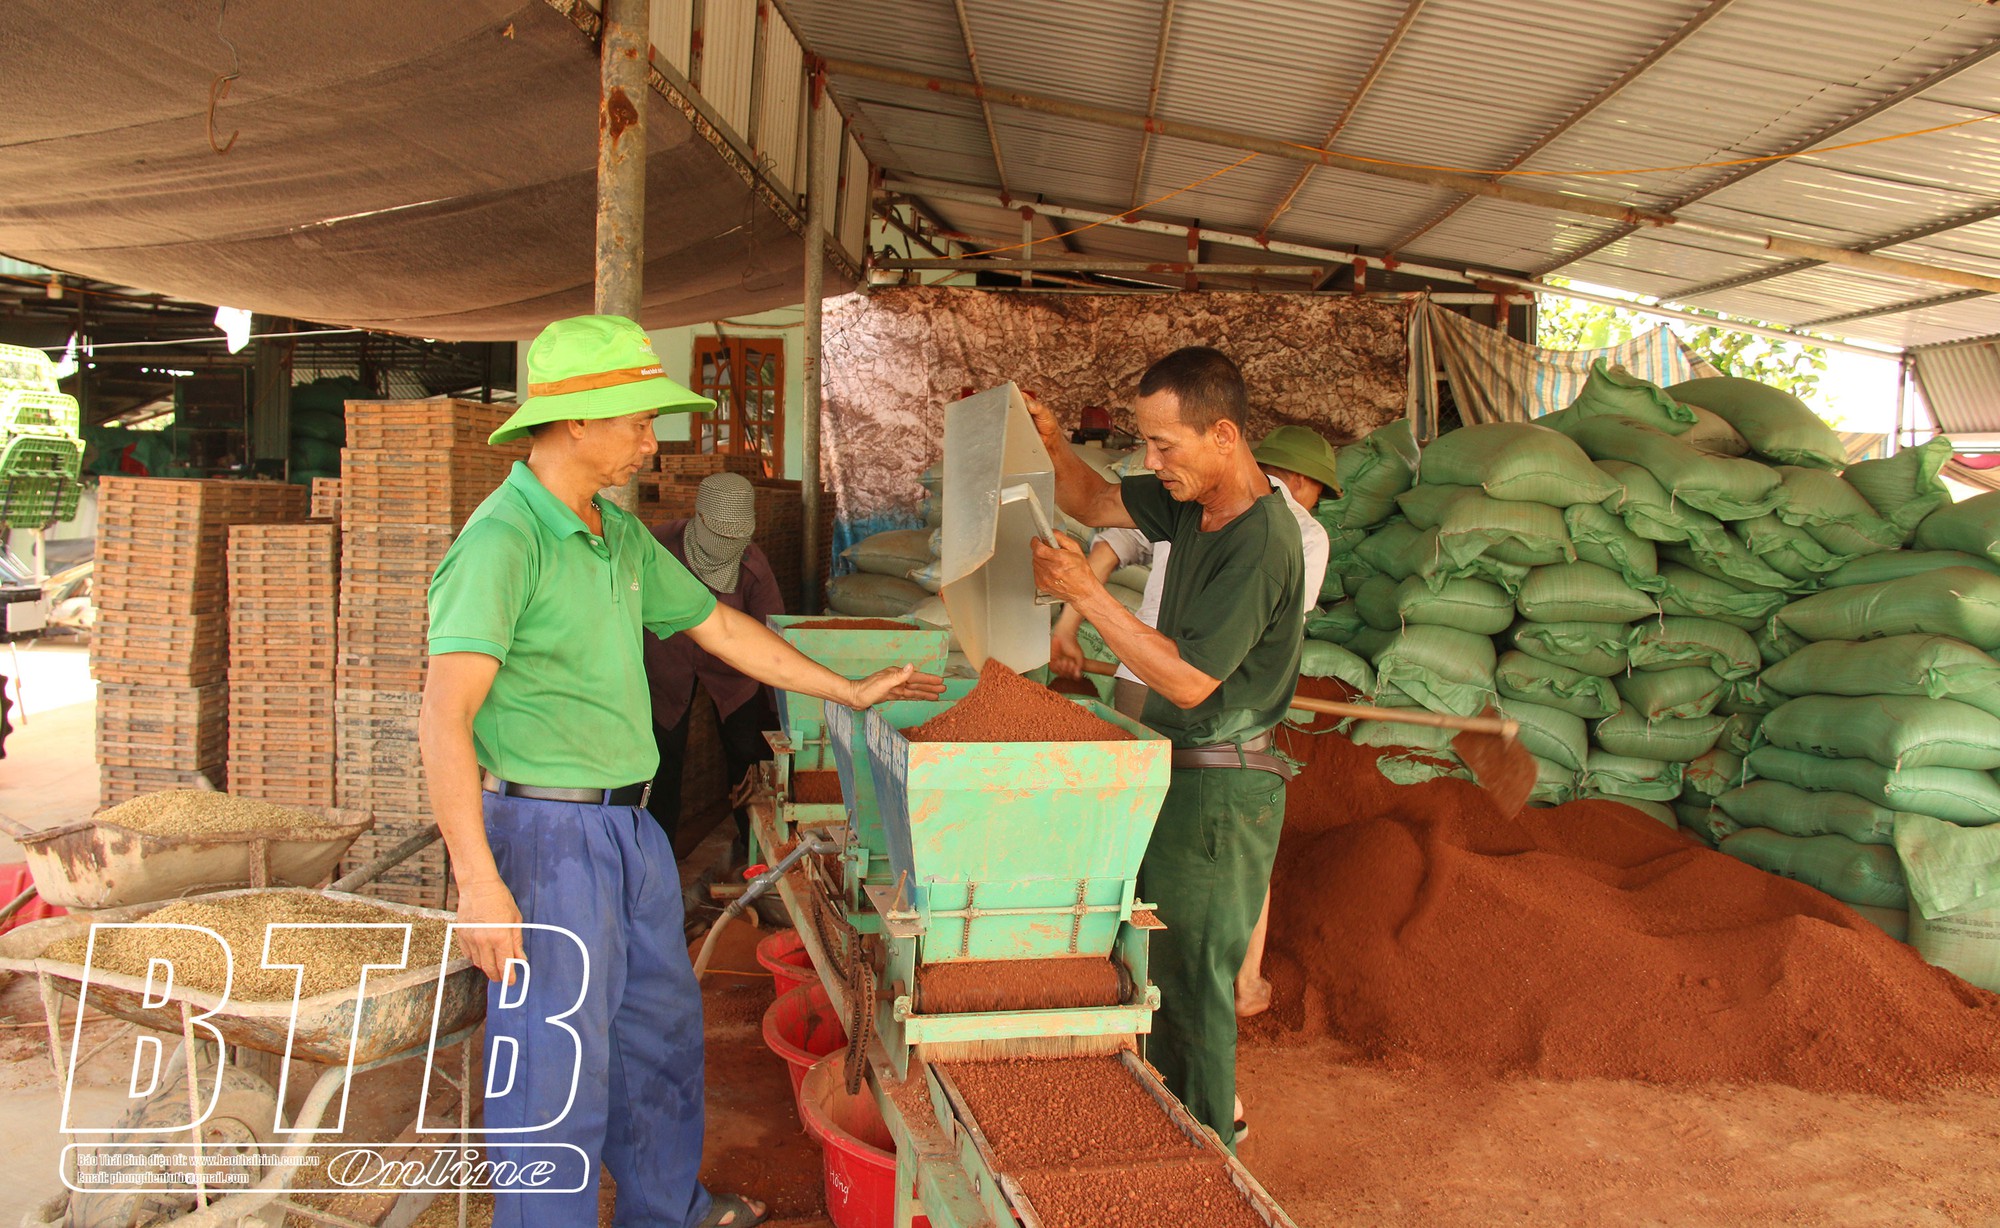 Anh nông dân Thái Bình làm ra chiếc máy gieo mạ khay giá rẻ nhưng chất lượng tương đương các hãng lớn  - Ảnh 1.